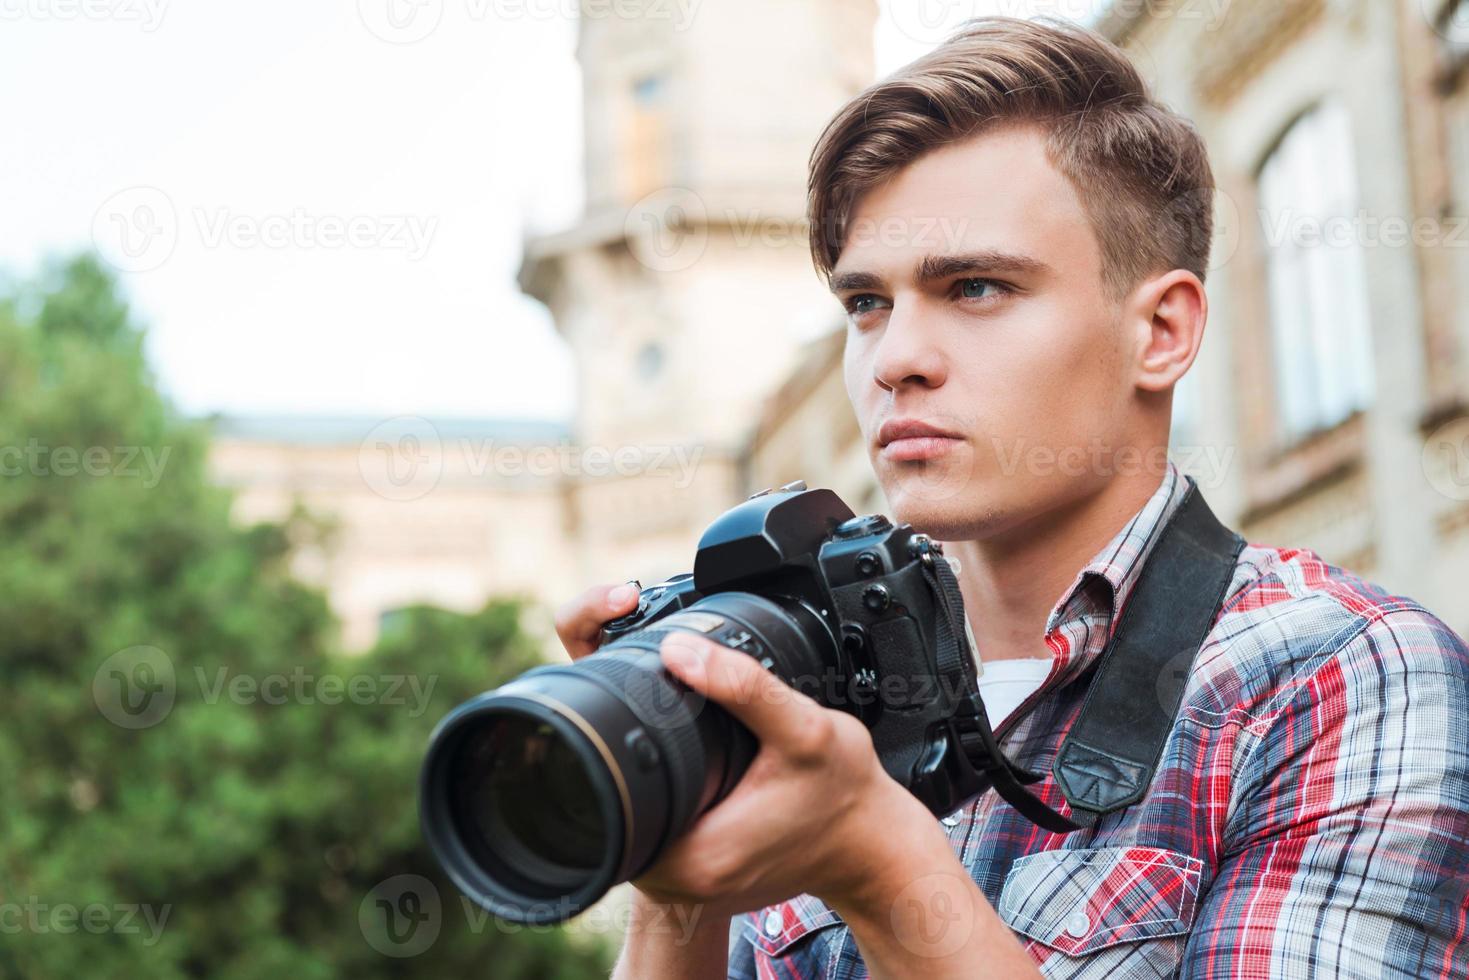 redo till skjuta. stilig ung man innehav digital kamera och ser bort medan stående utomhus foto